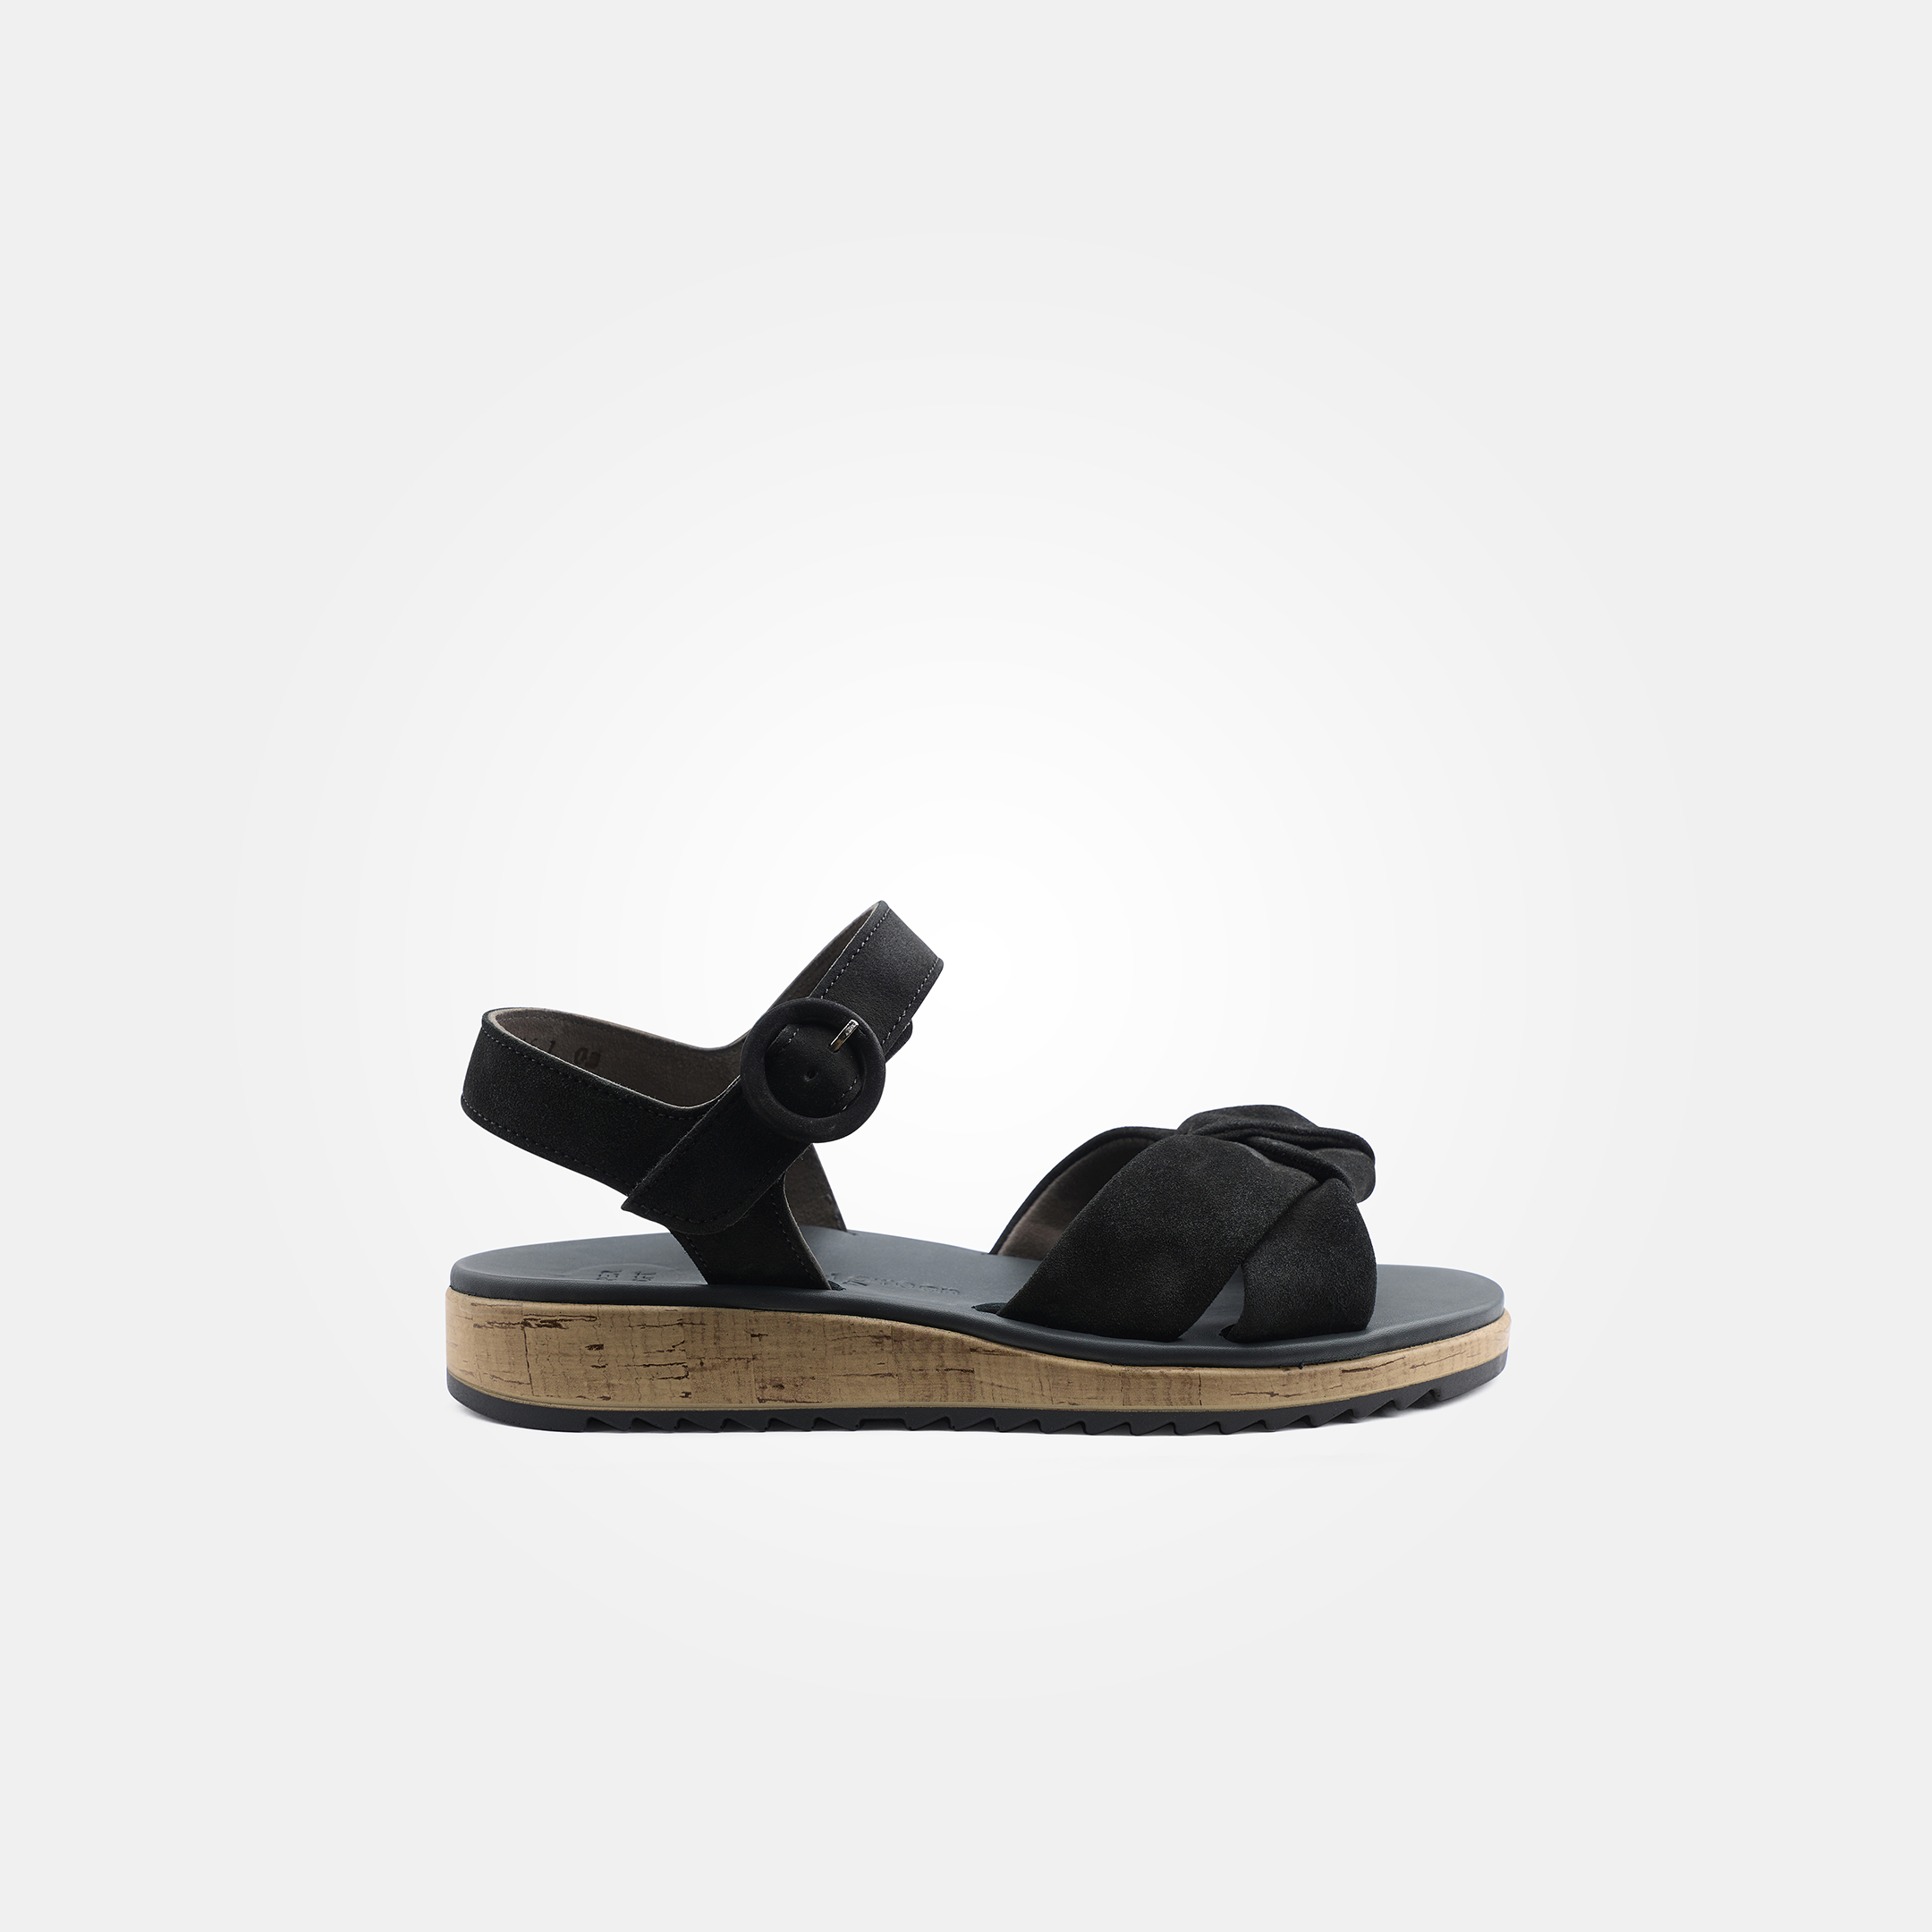 SUPER SOFT sandals in black - Paul Green